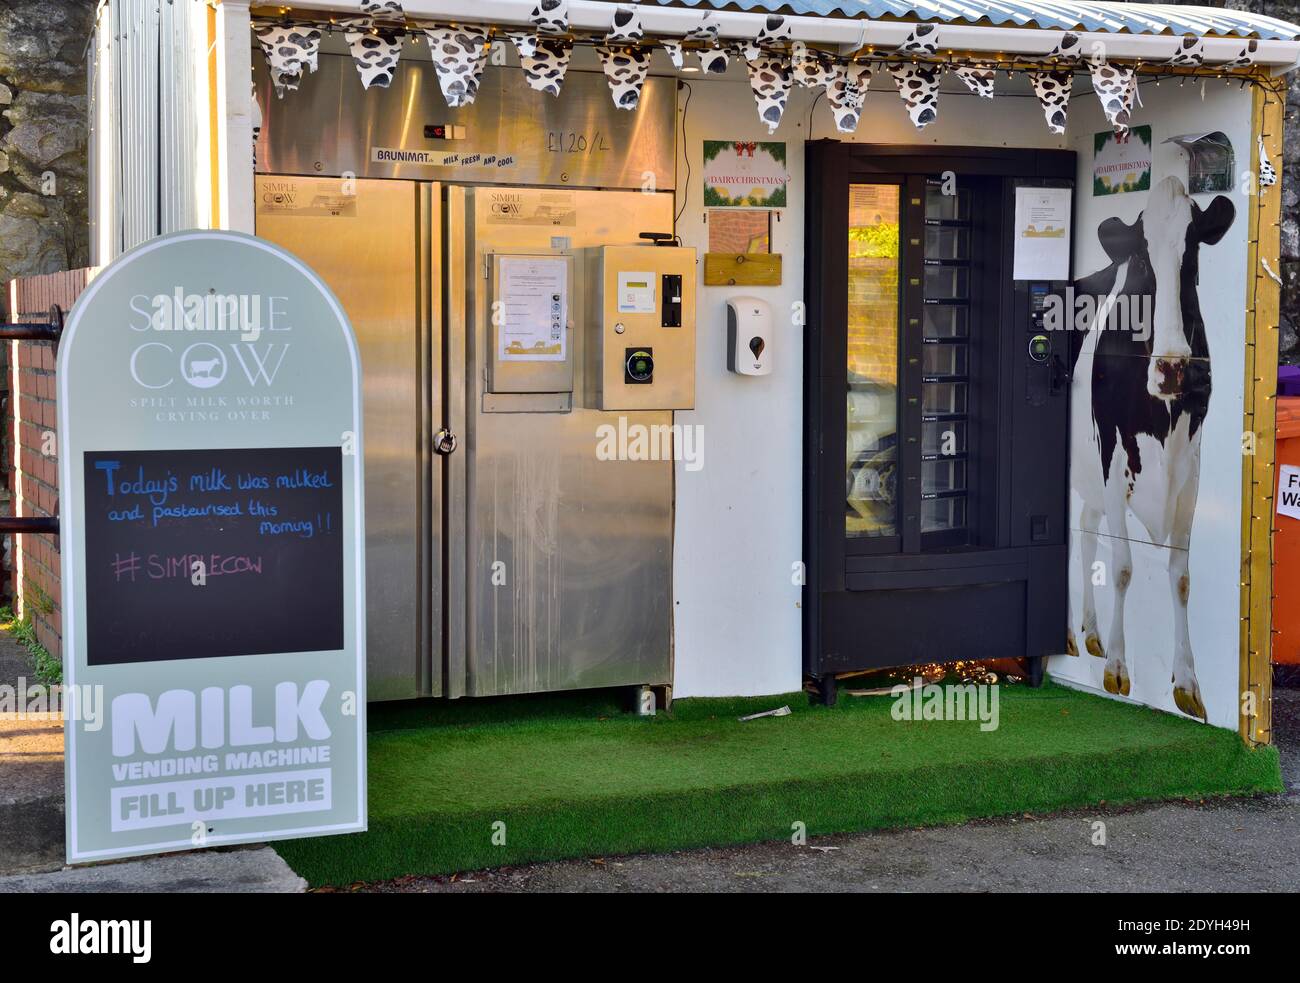 Distributeur automatique de lait, lait frais des fermes locales avec distributeur automatique, Bristol, Angleterre Banque D'Images